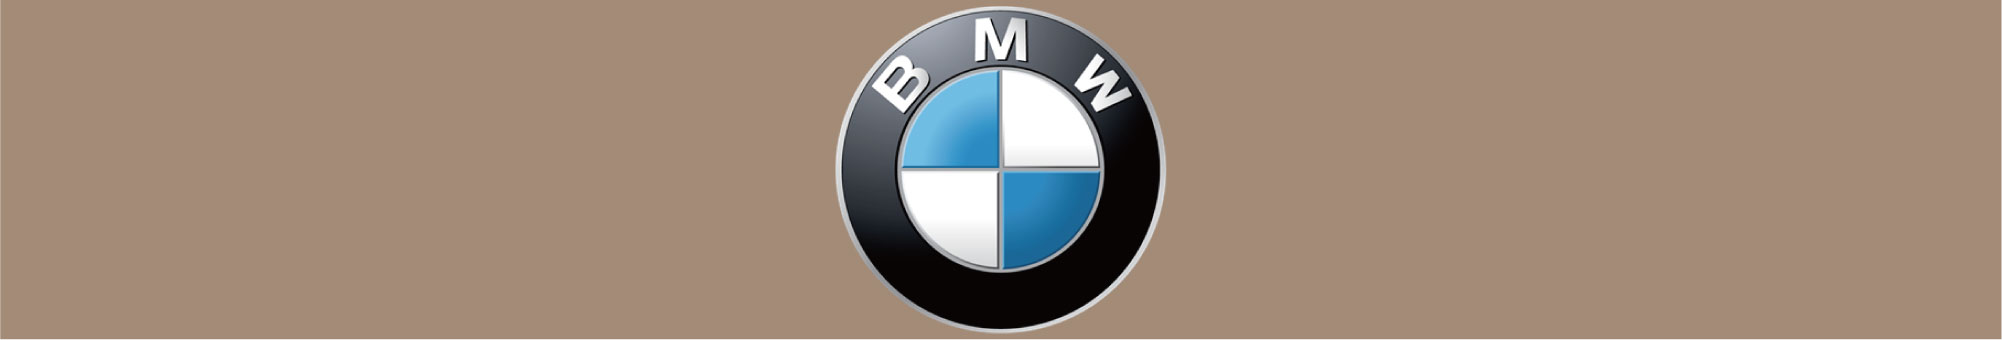 BMW車ブレーキ適合表